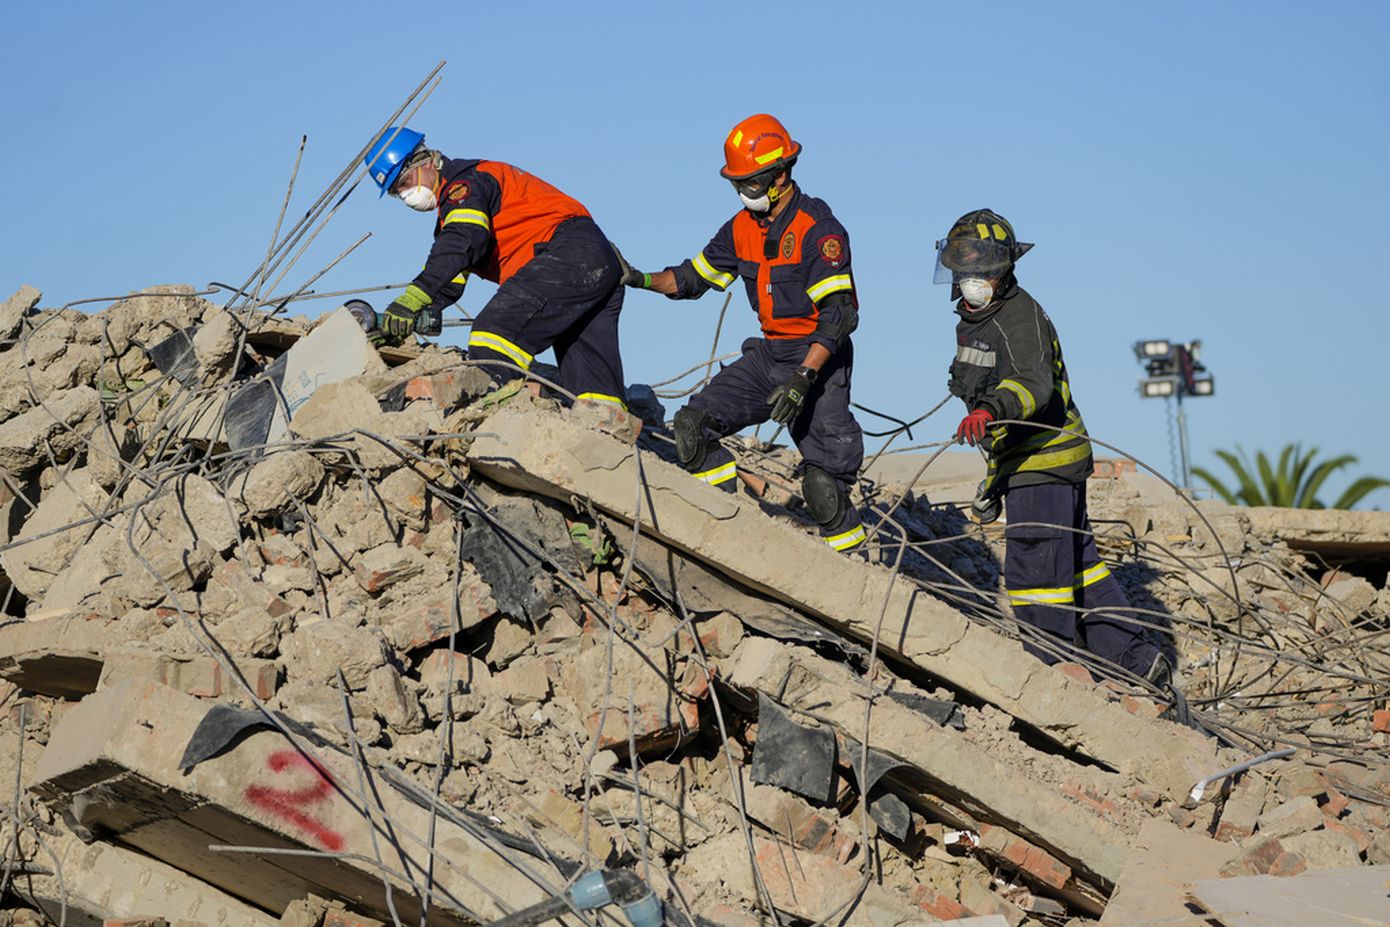 Θαύμα στα ερείπια: Άνδρας ανασύρθηκε ζωντανός, πέντε ημέρες μετά την κατάρρευση κτιρίου στη Νότια Αφρική